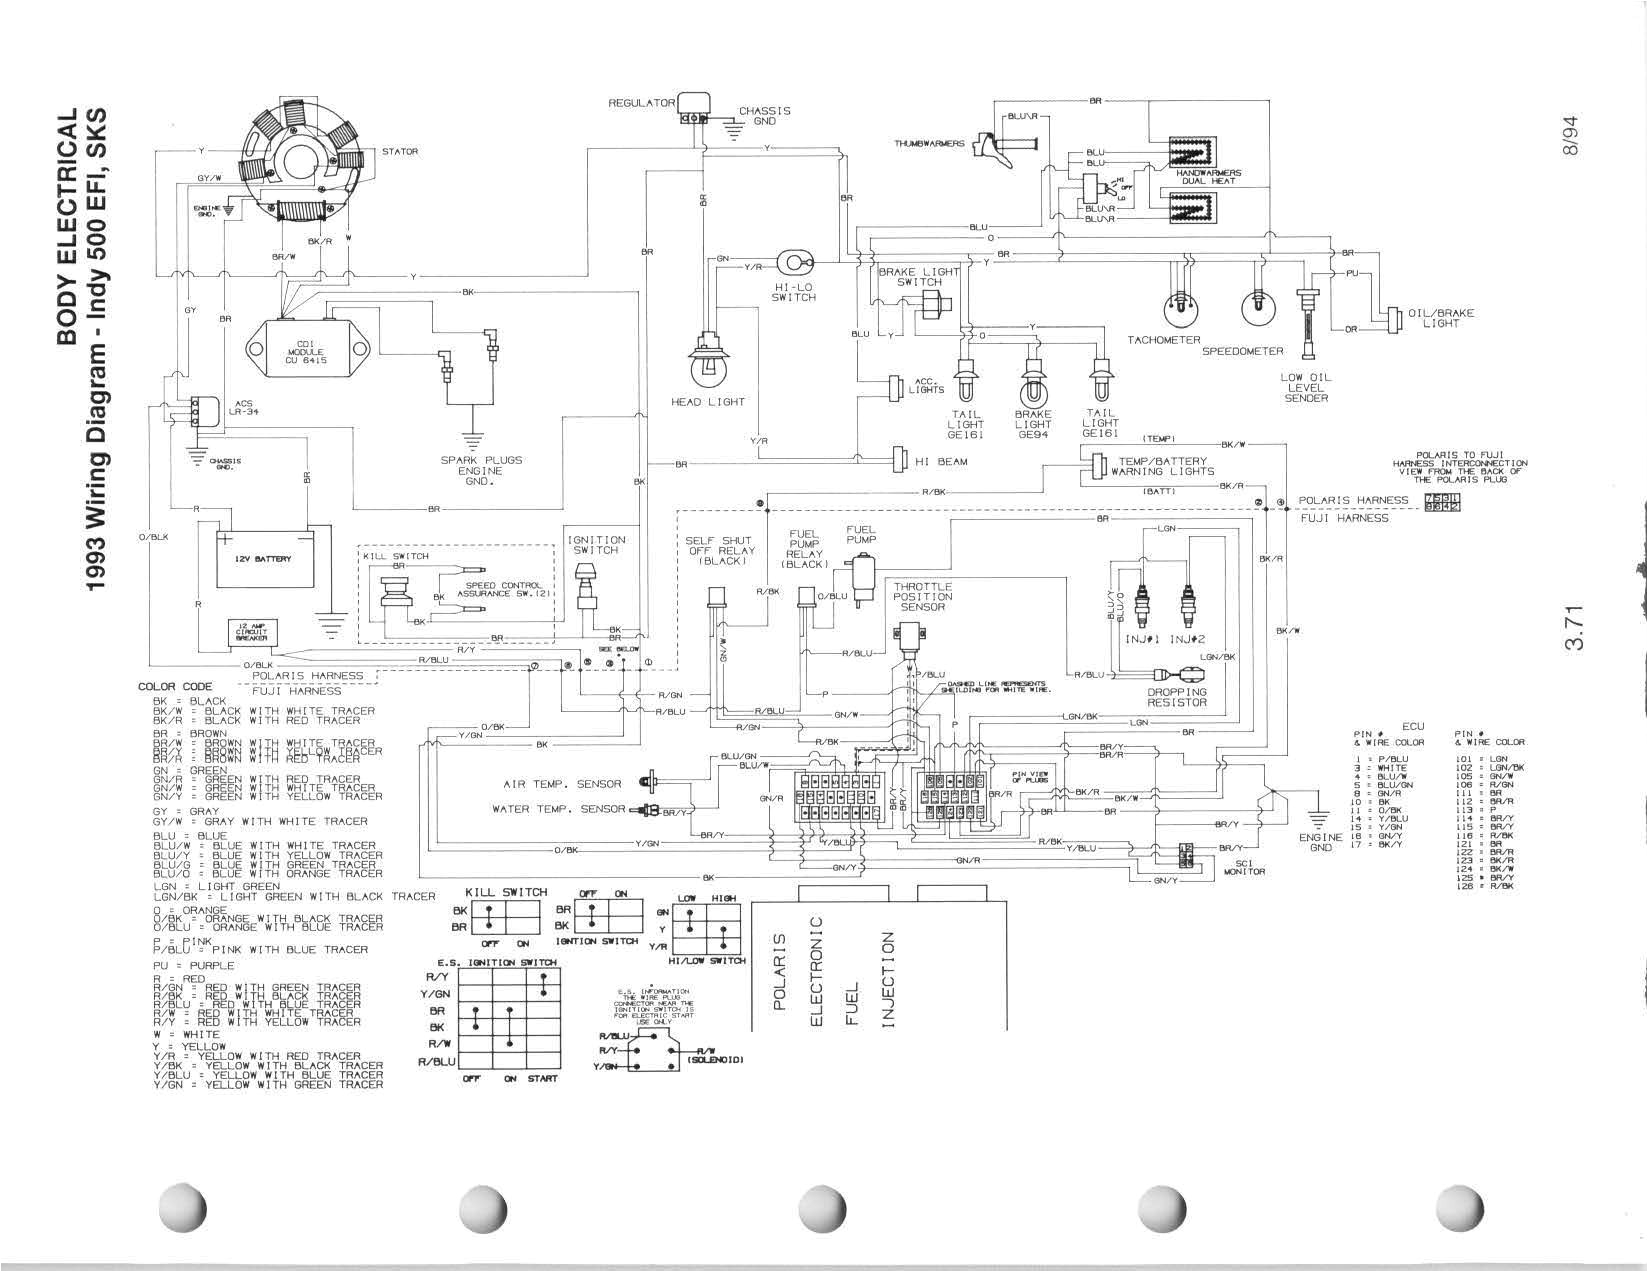 polaris electrical diagram wiring diagram article polaris sportsman 500 ho electrical diagram polaris electrical diagram